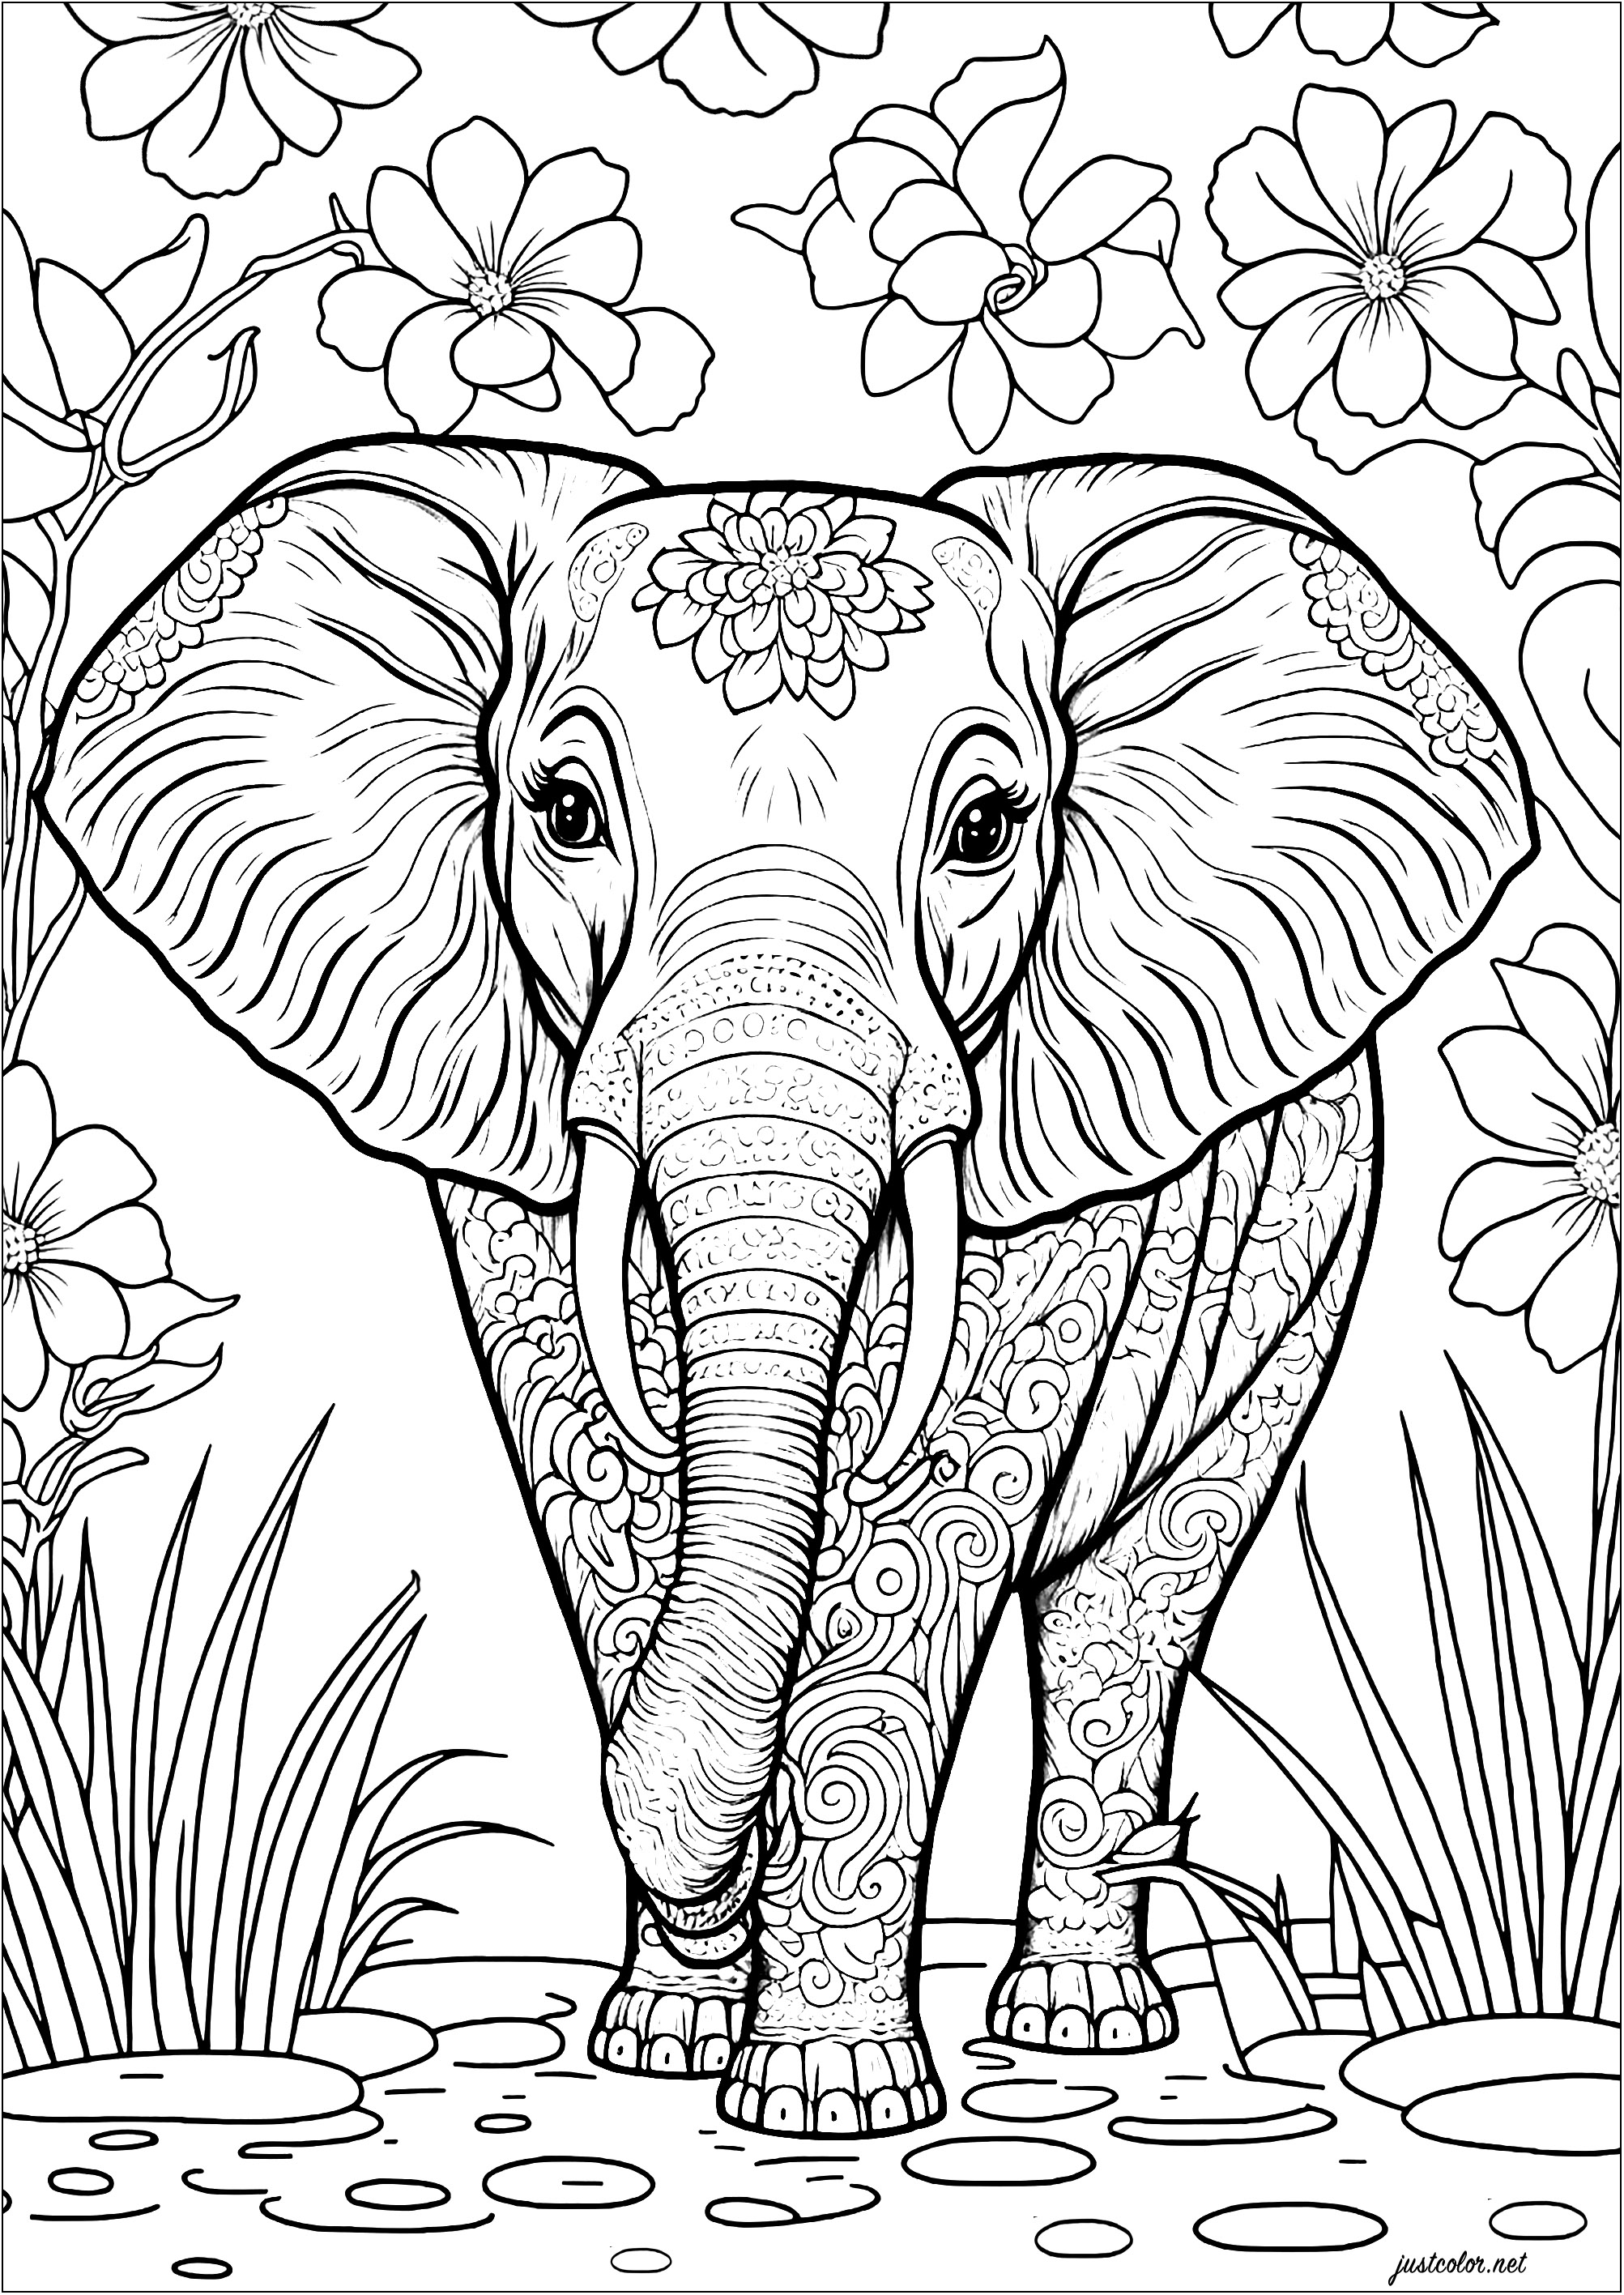 Pagina da colorare di elefante carino con vari motivi da colorare. Il corpo dell'elefante è decorato con spirali, strisce e punti, mentre le sue orecchie sono piene di forme geometriche e altri motivi. Colorate anche i bei fiori e la vegetazione sullo sfondo.